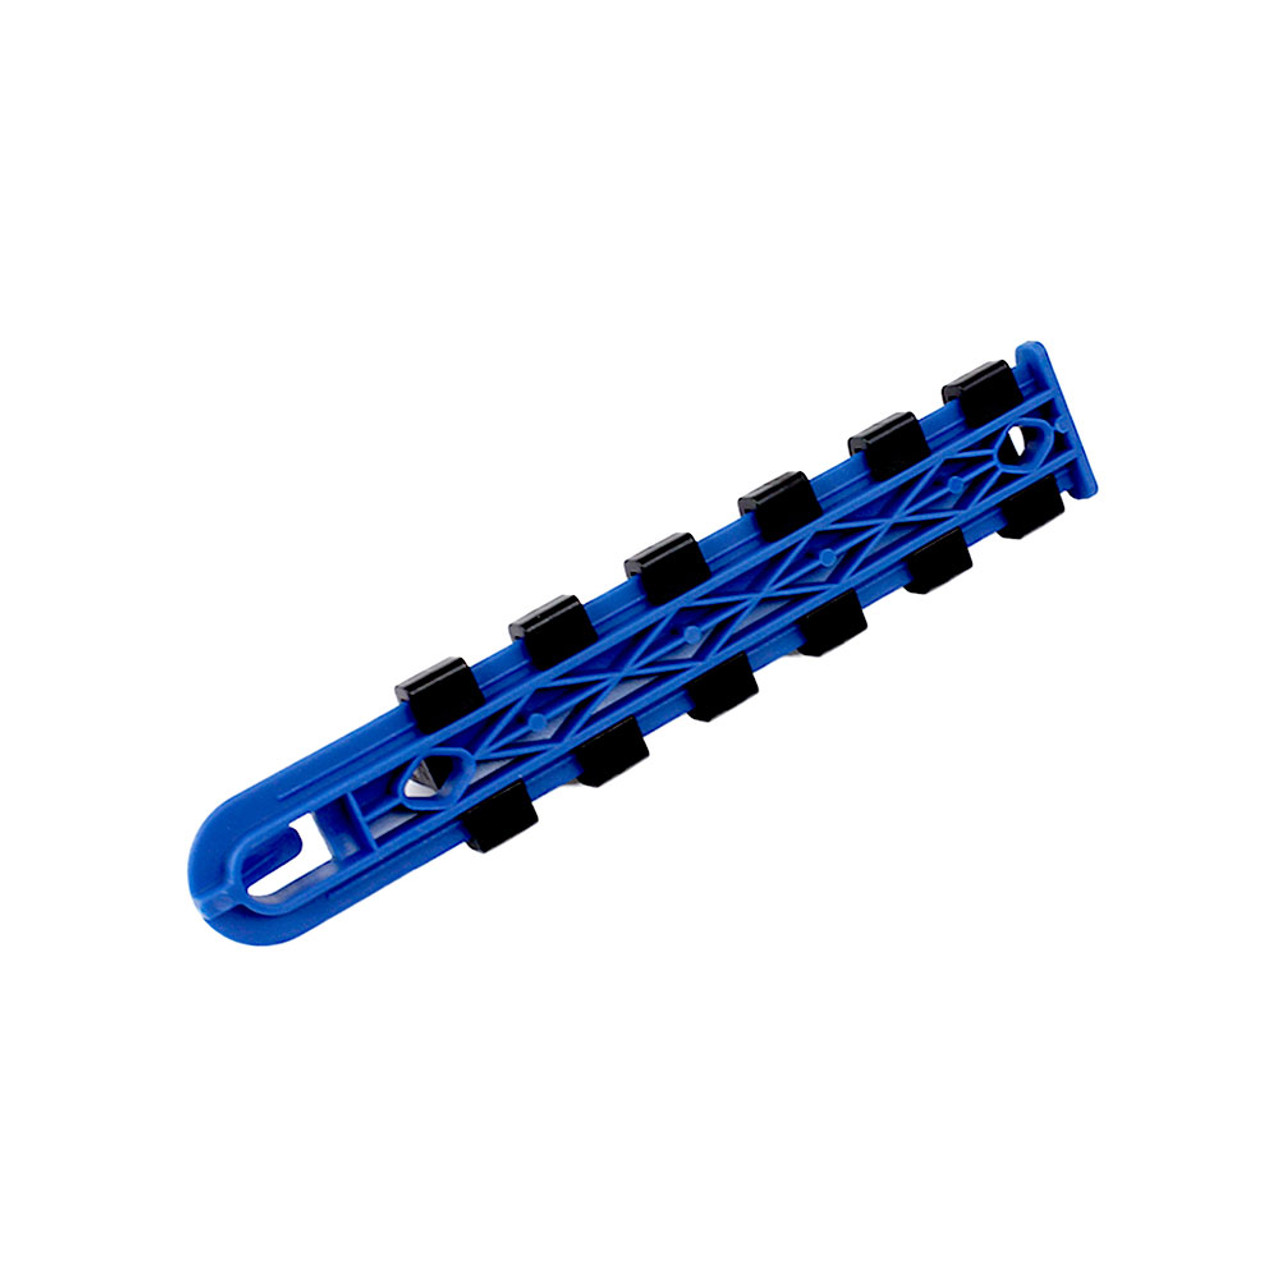 Capri Tools 6-Inch Socket Rail, 1/2-Inch Drive